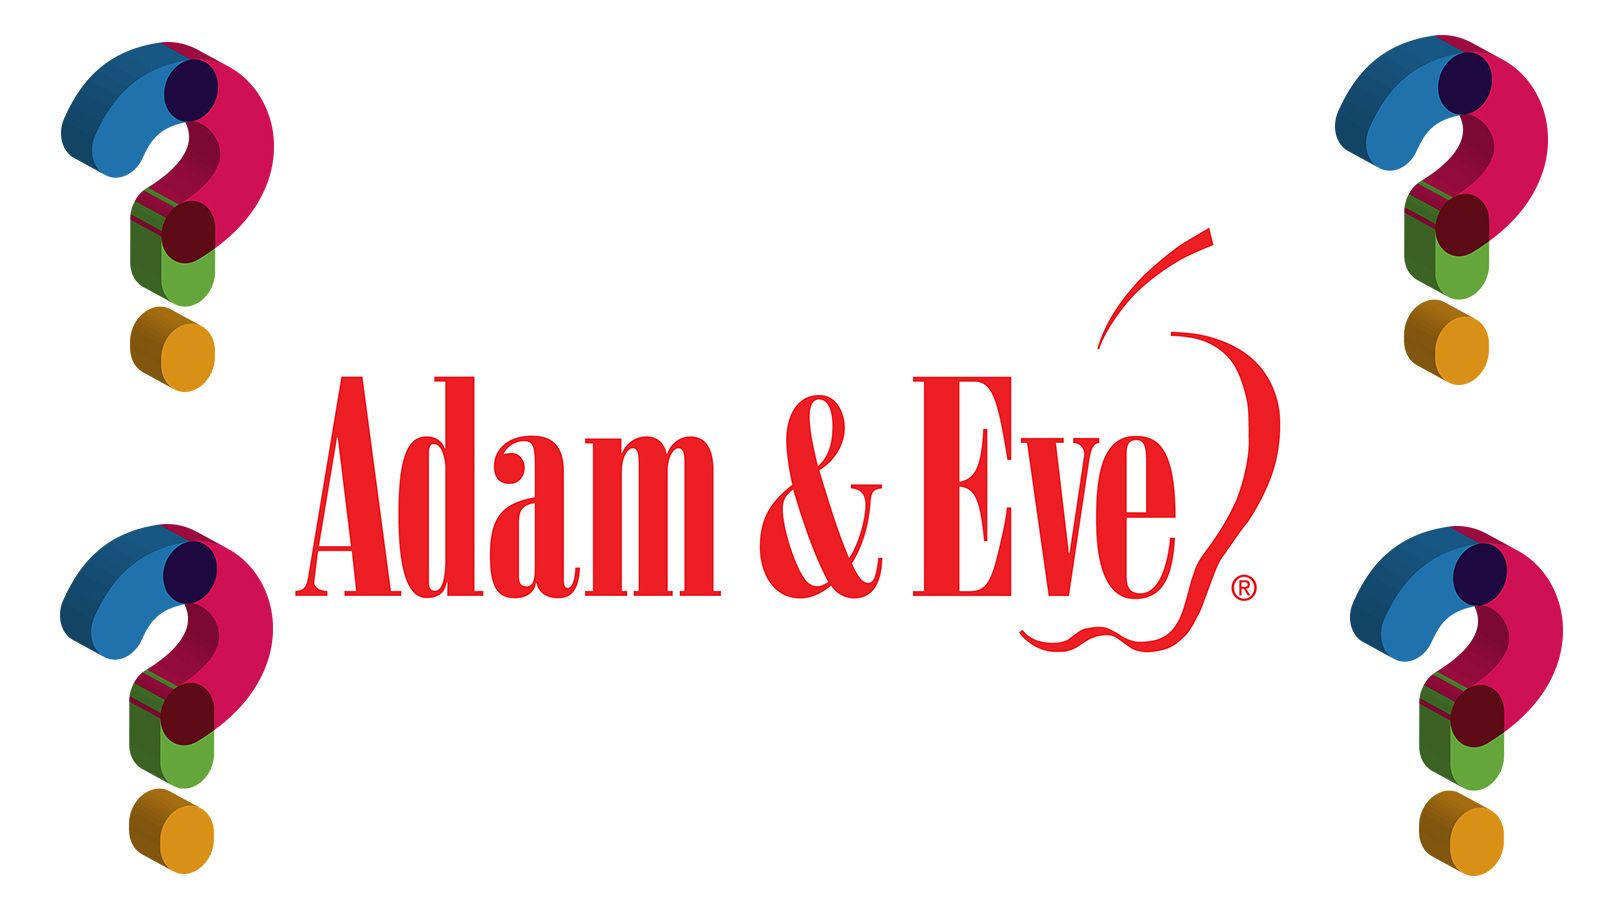 Adam & Eve Asks "How Often Are You Masturbating?"